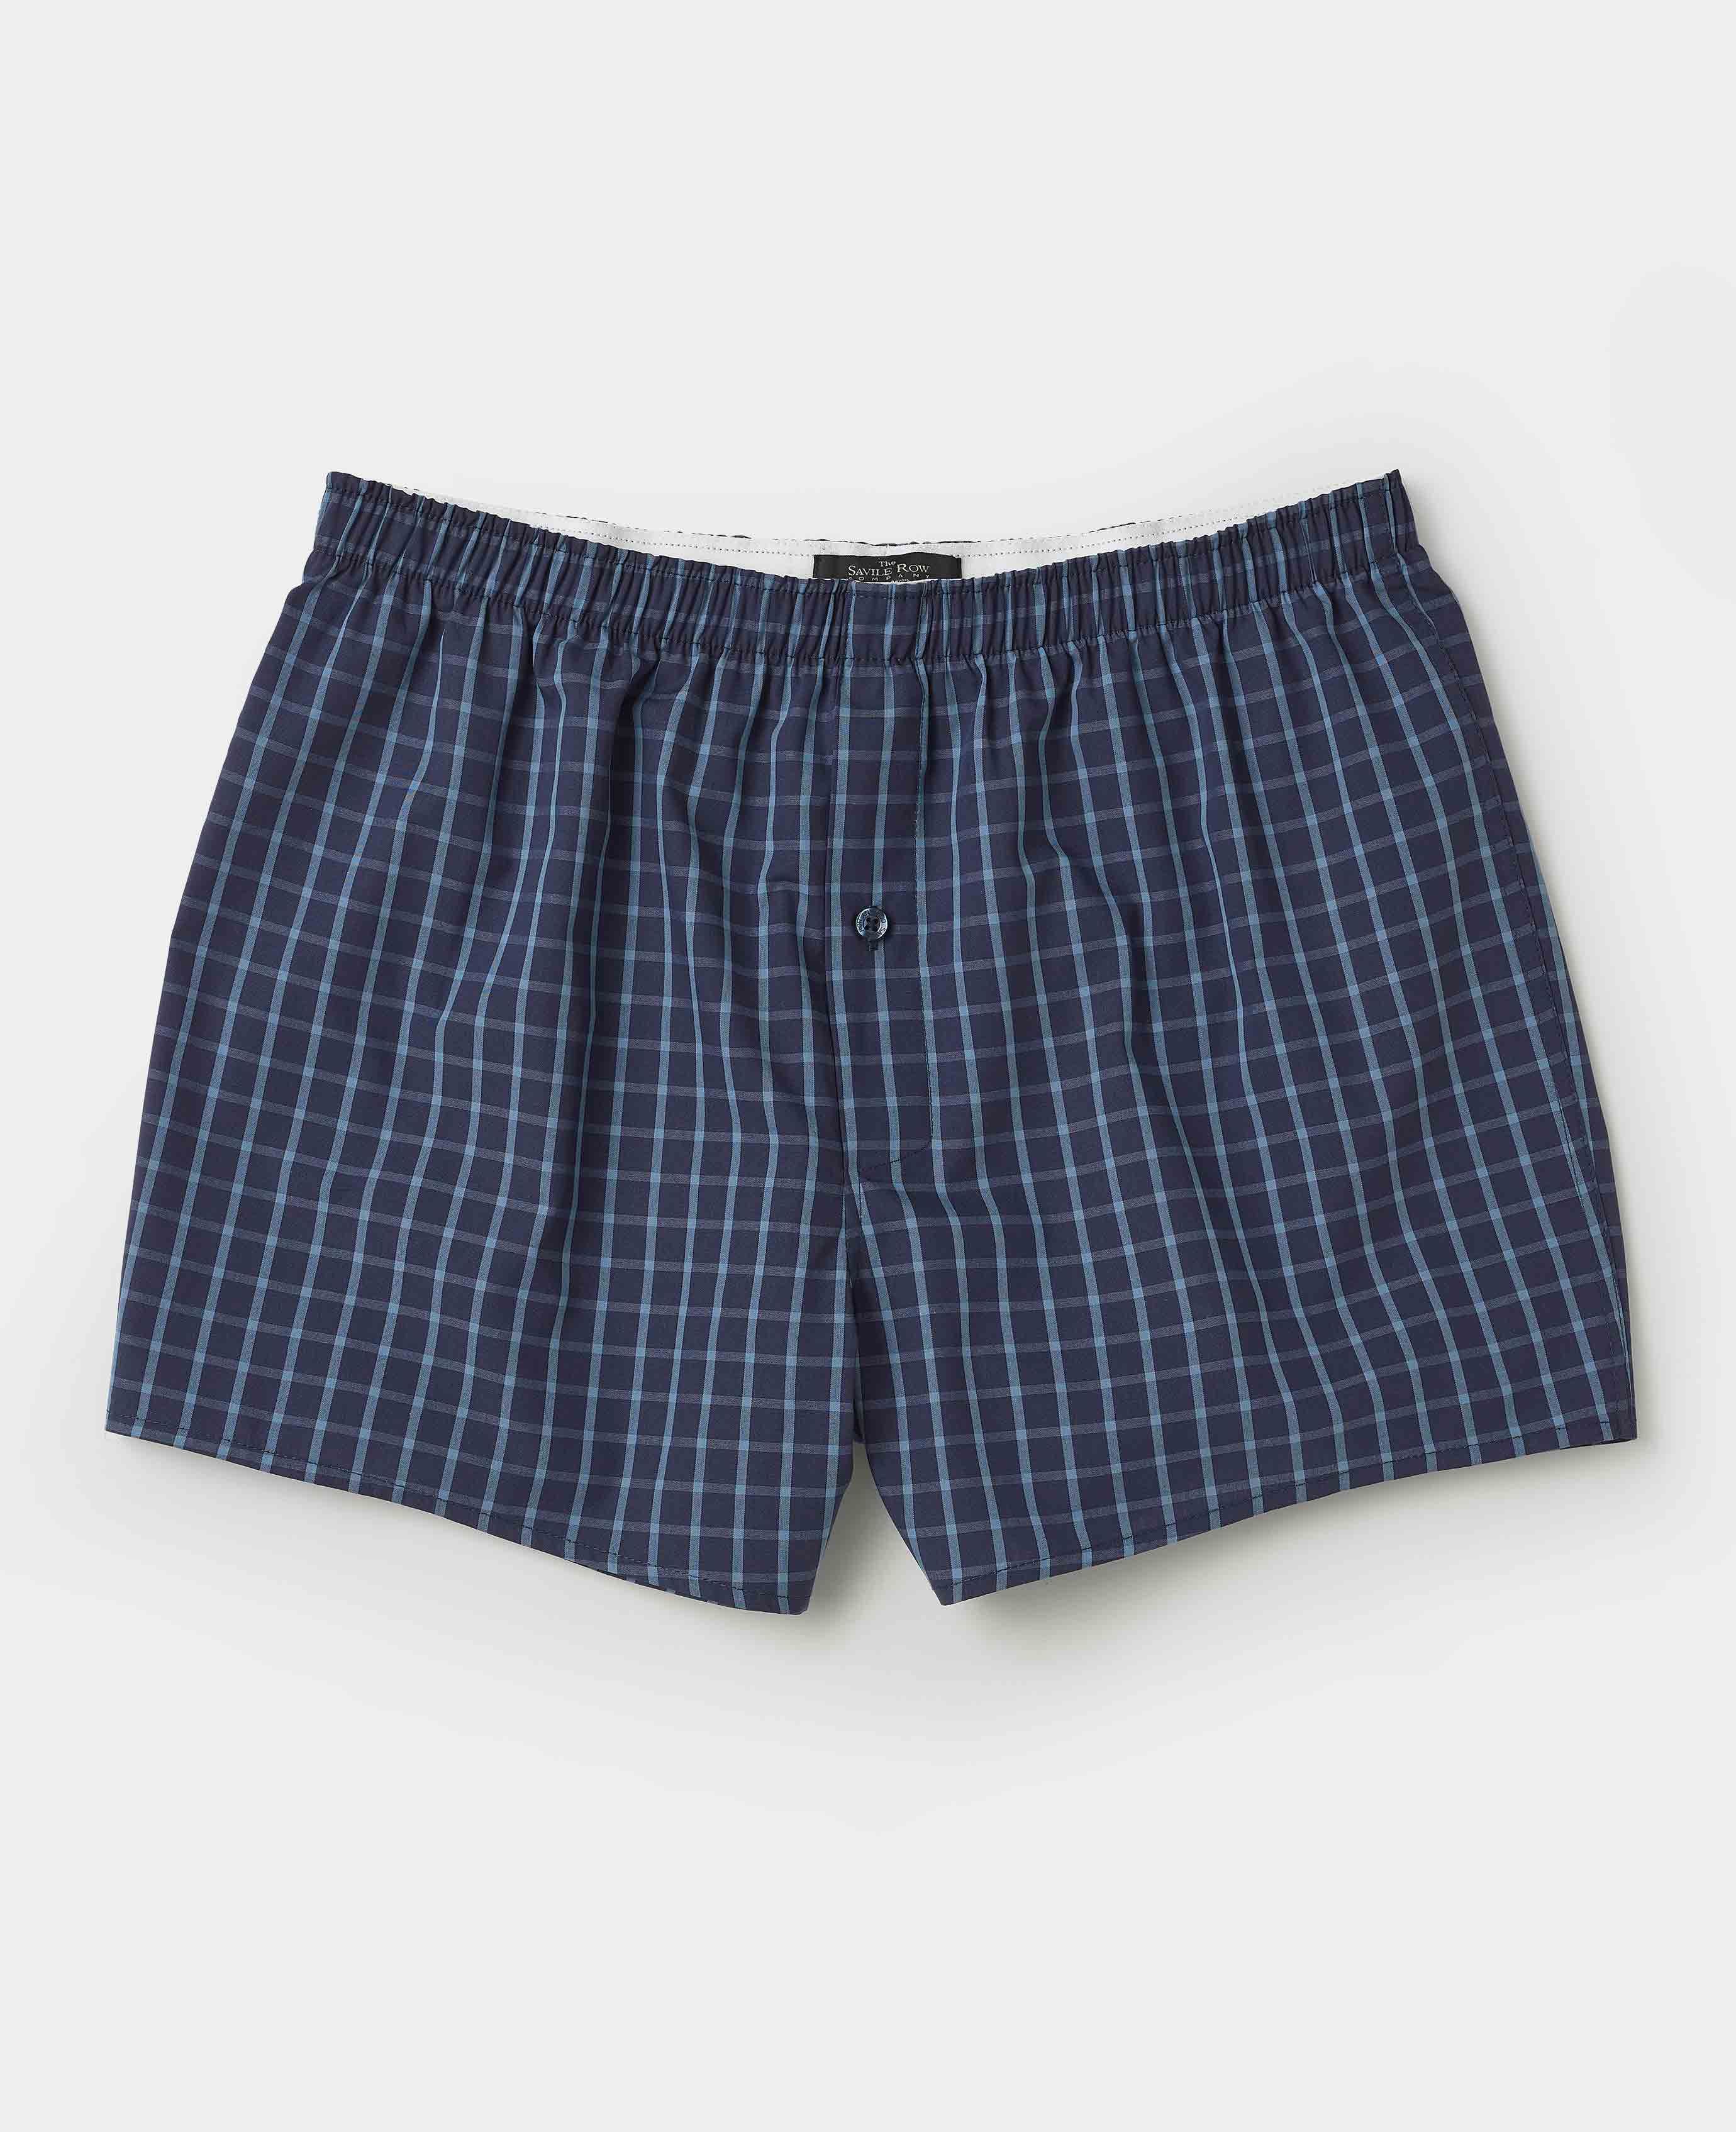 Men’s Cotton Boxer Shorts in Blue Check | Savile Row Co